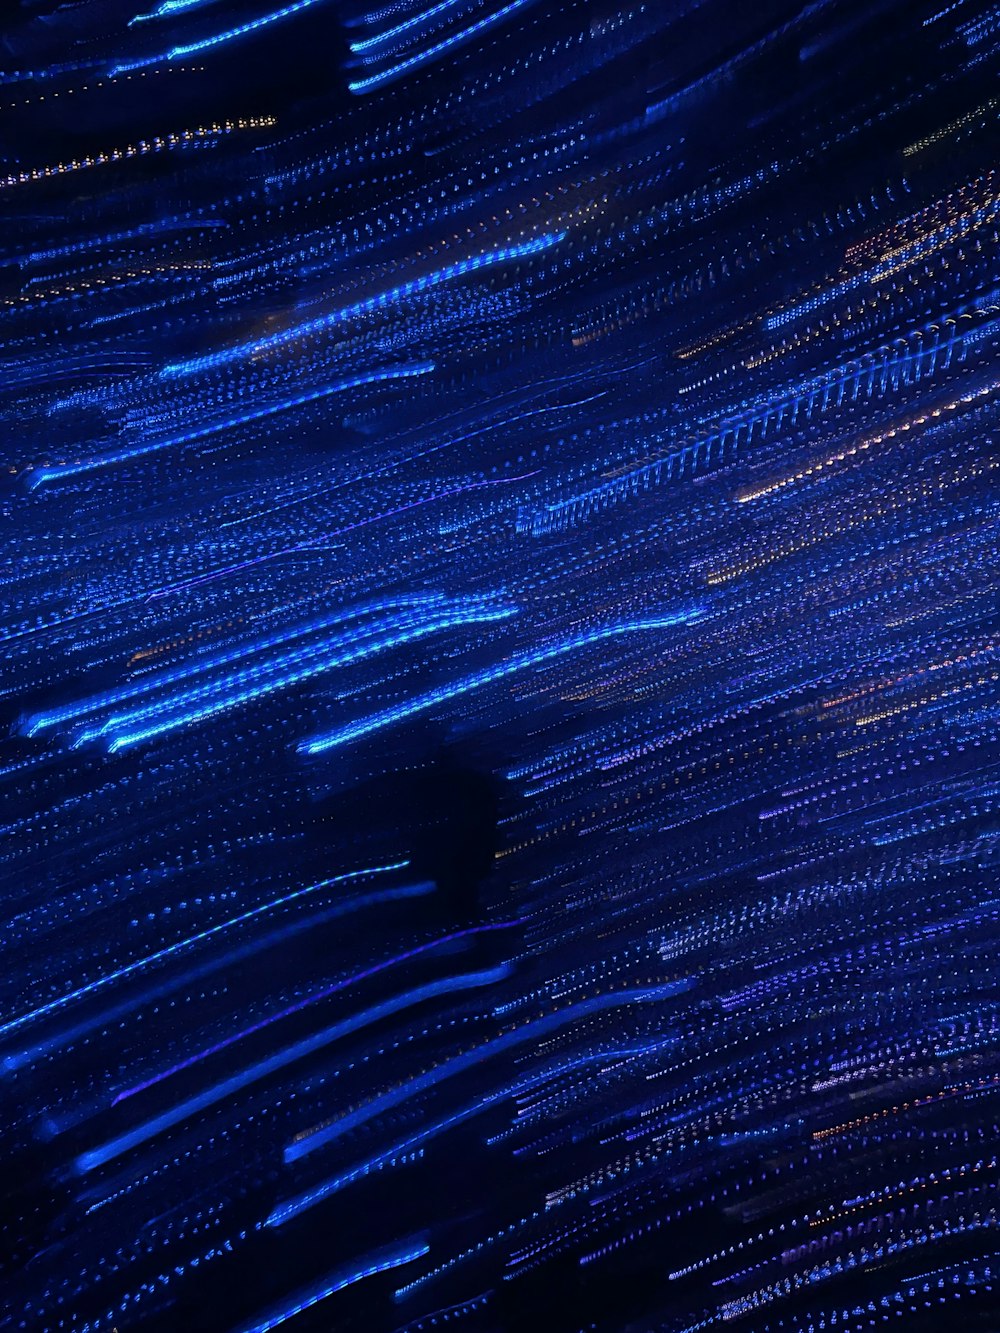 une très longue exposition de lumières bleues dans le ciel nocturne